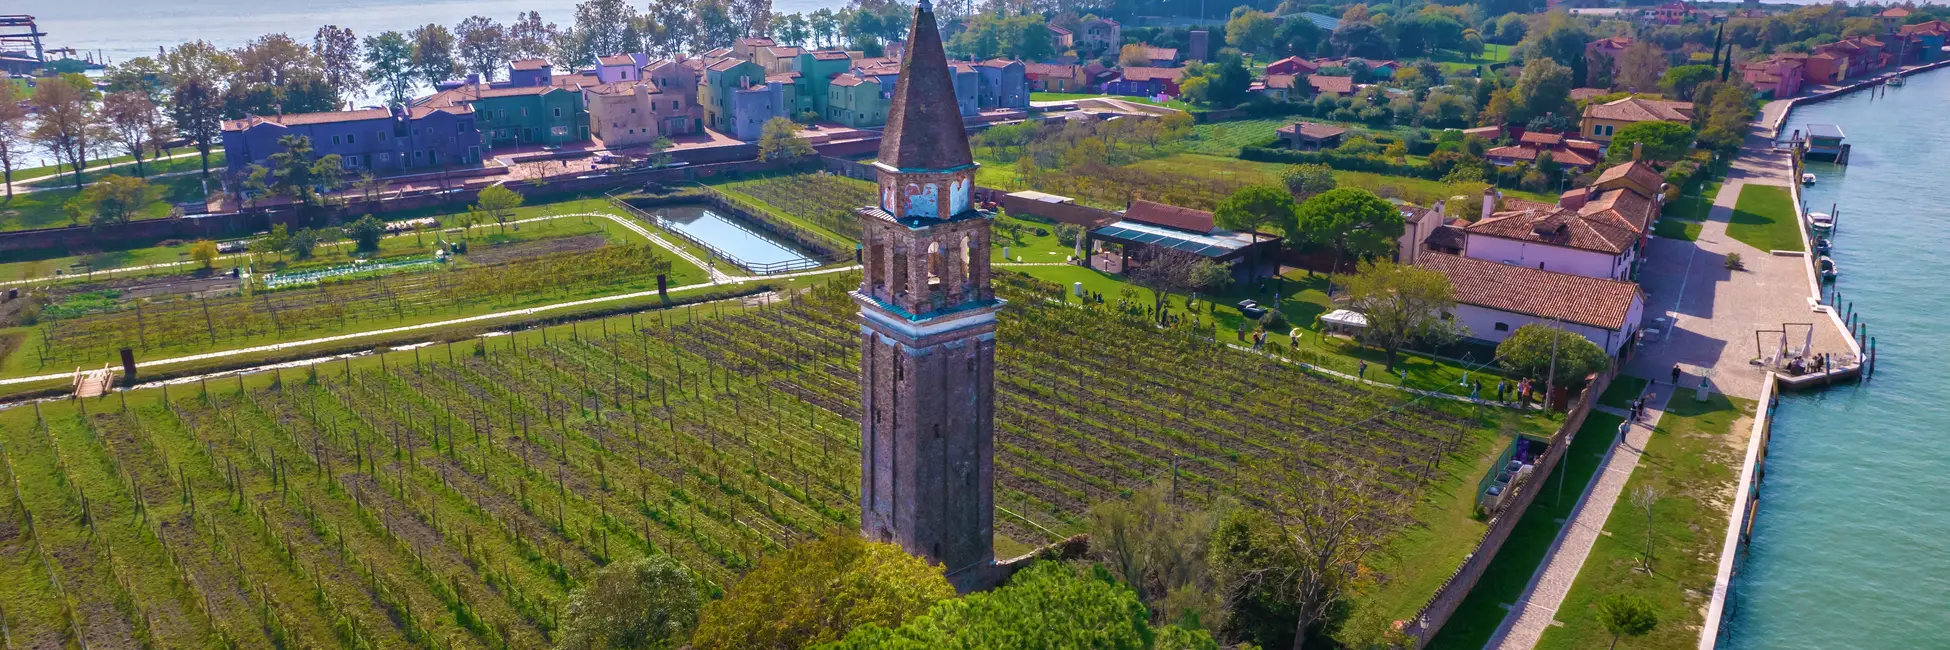 Vue aérienne sur les vignes de Mazzoro 